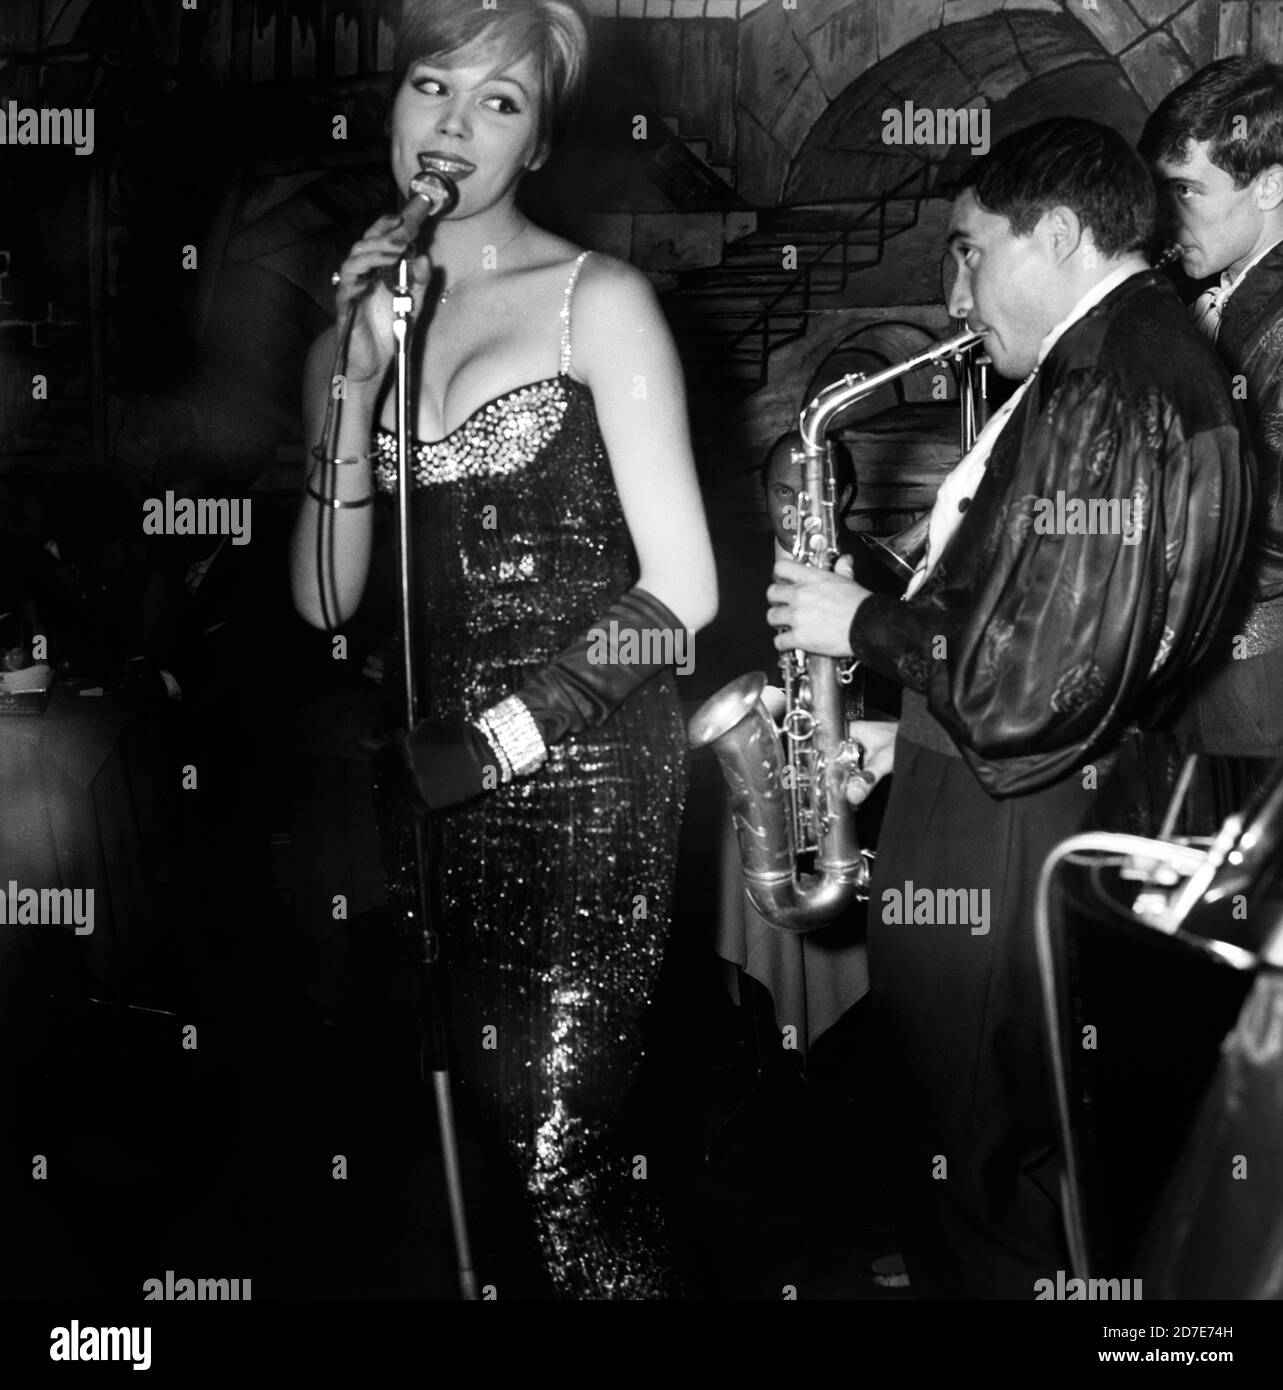 Amanda Lear performs in a club, Rome, 1960s. --- Amanda Lear si esibisce in un locale, Roma, Anni 60. Stock Photo